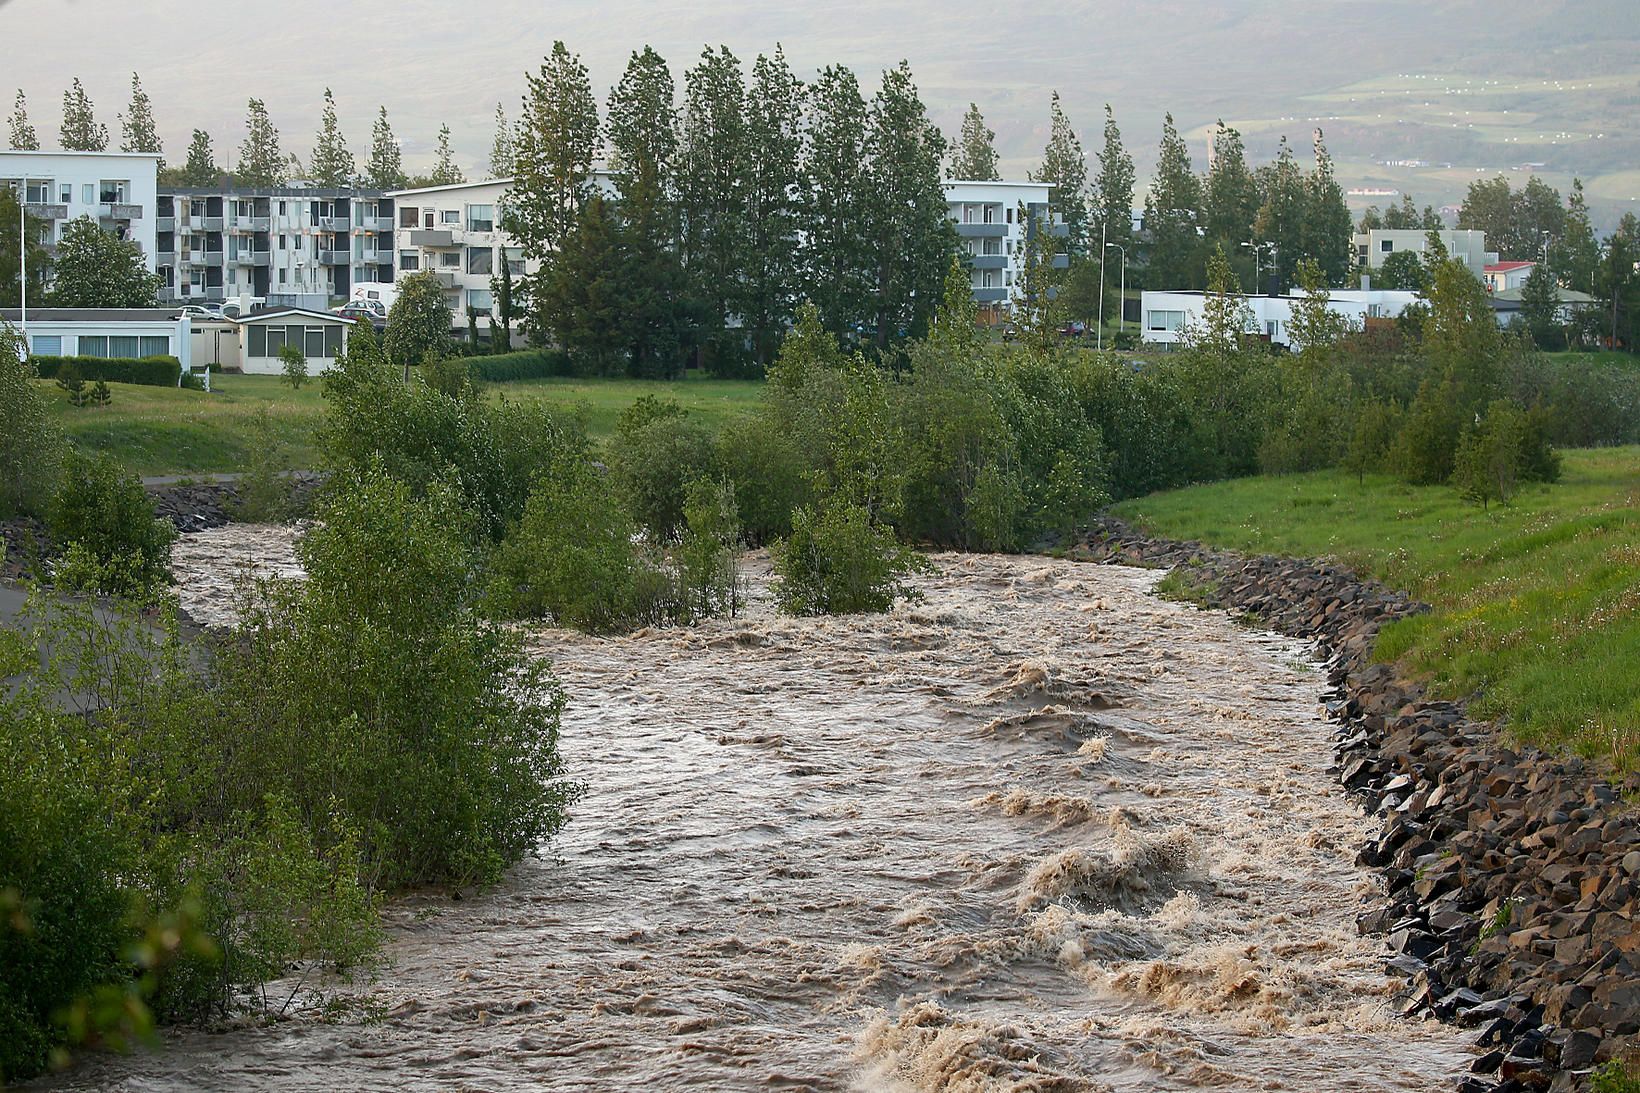 Miklir vatnavextir voru í Glerá á Akureyri.